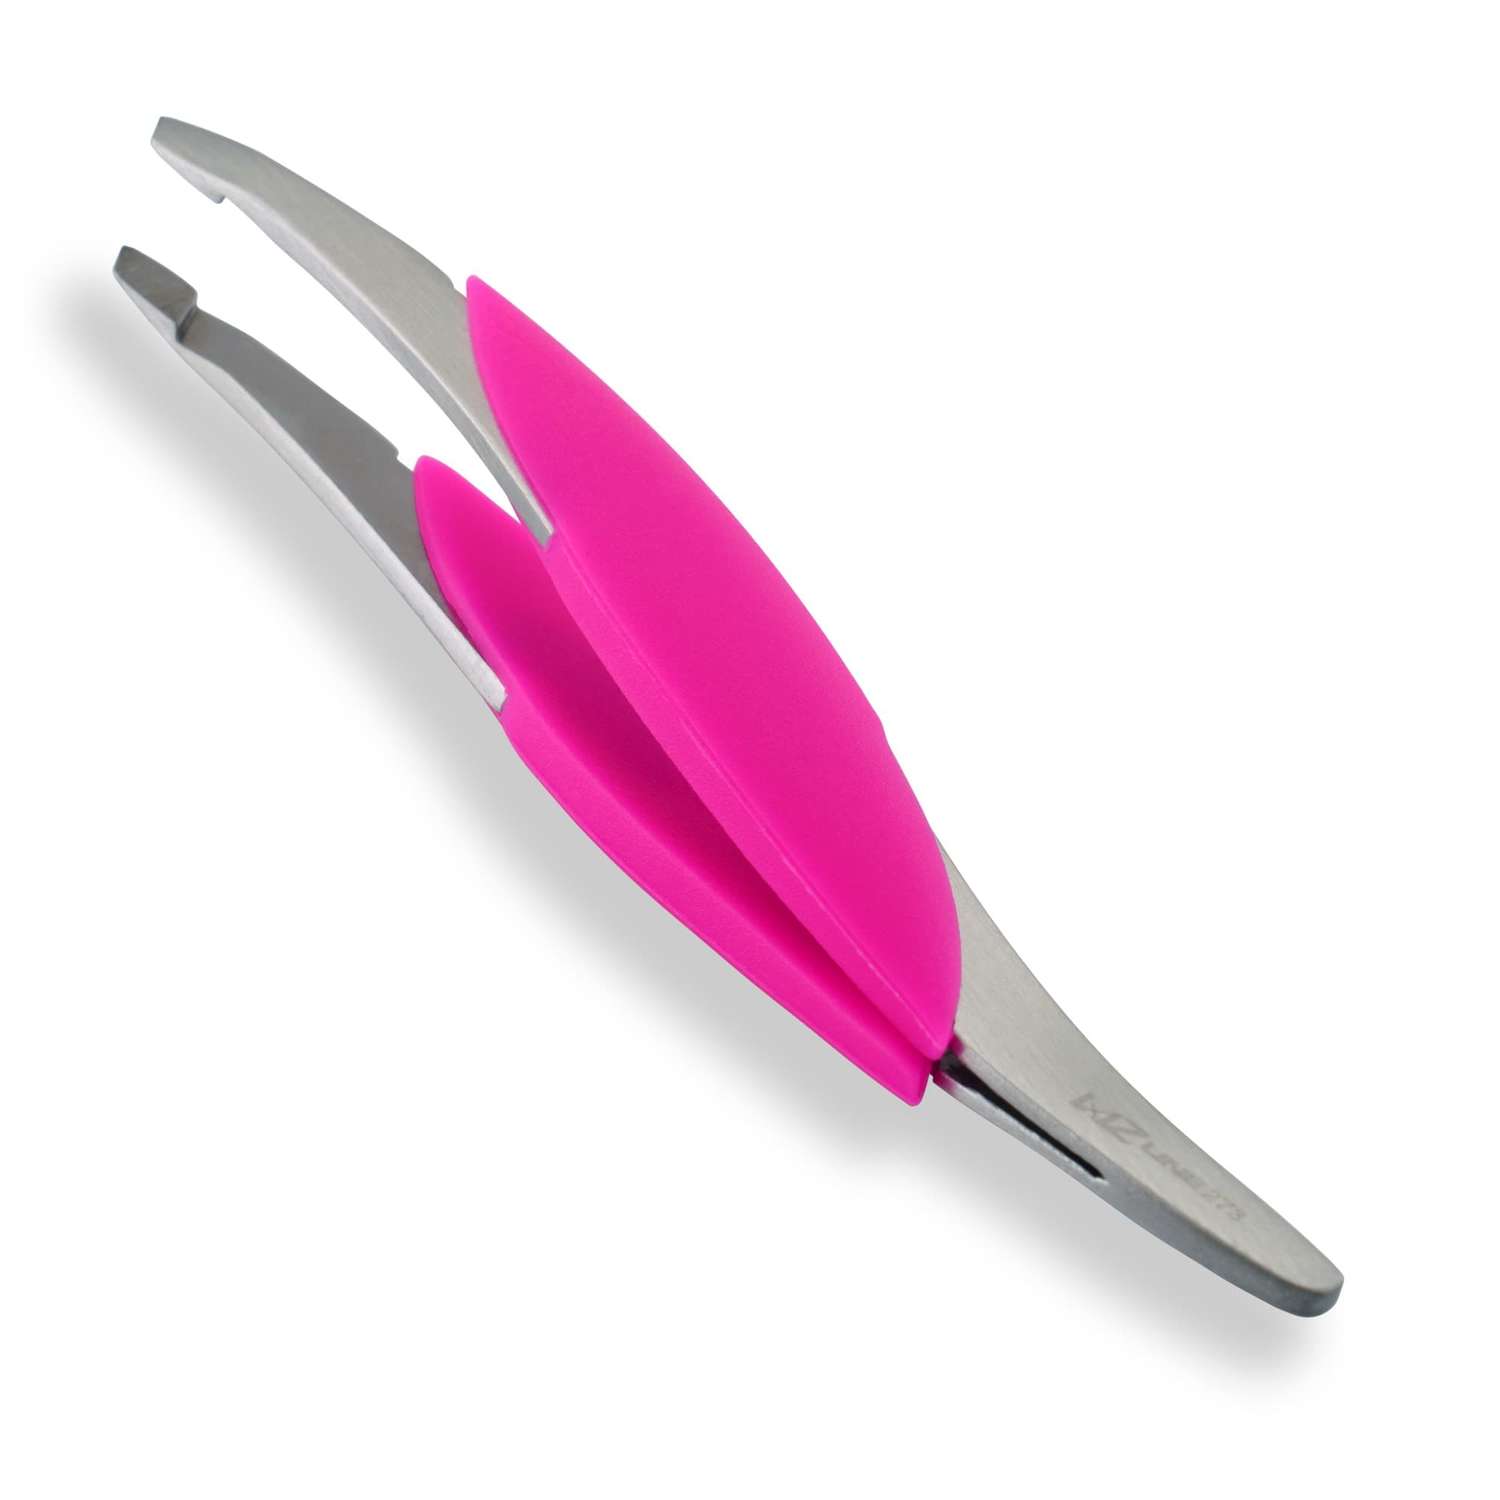 Пинцет Mertz диагональный с прорезиненной ручкой для бровей - фото 2